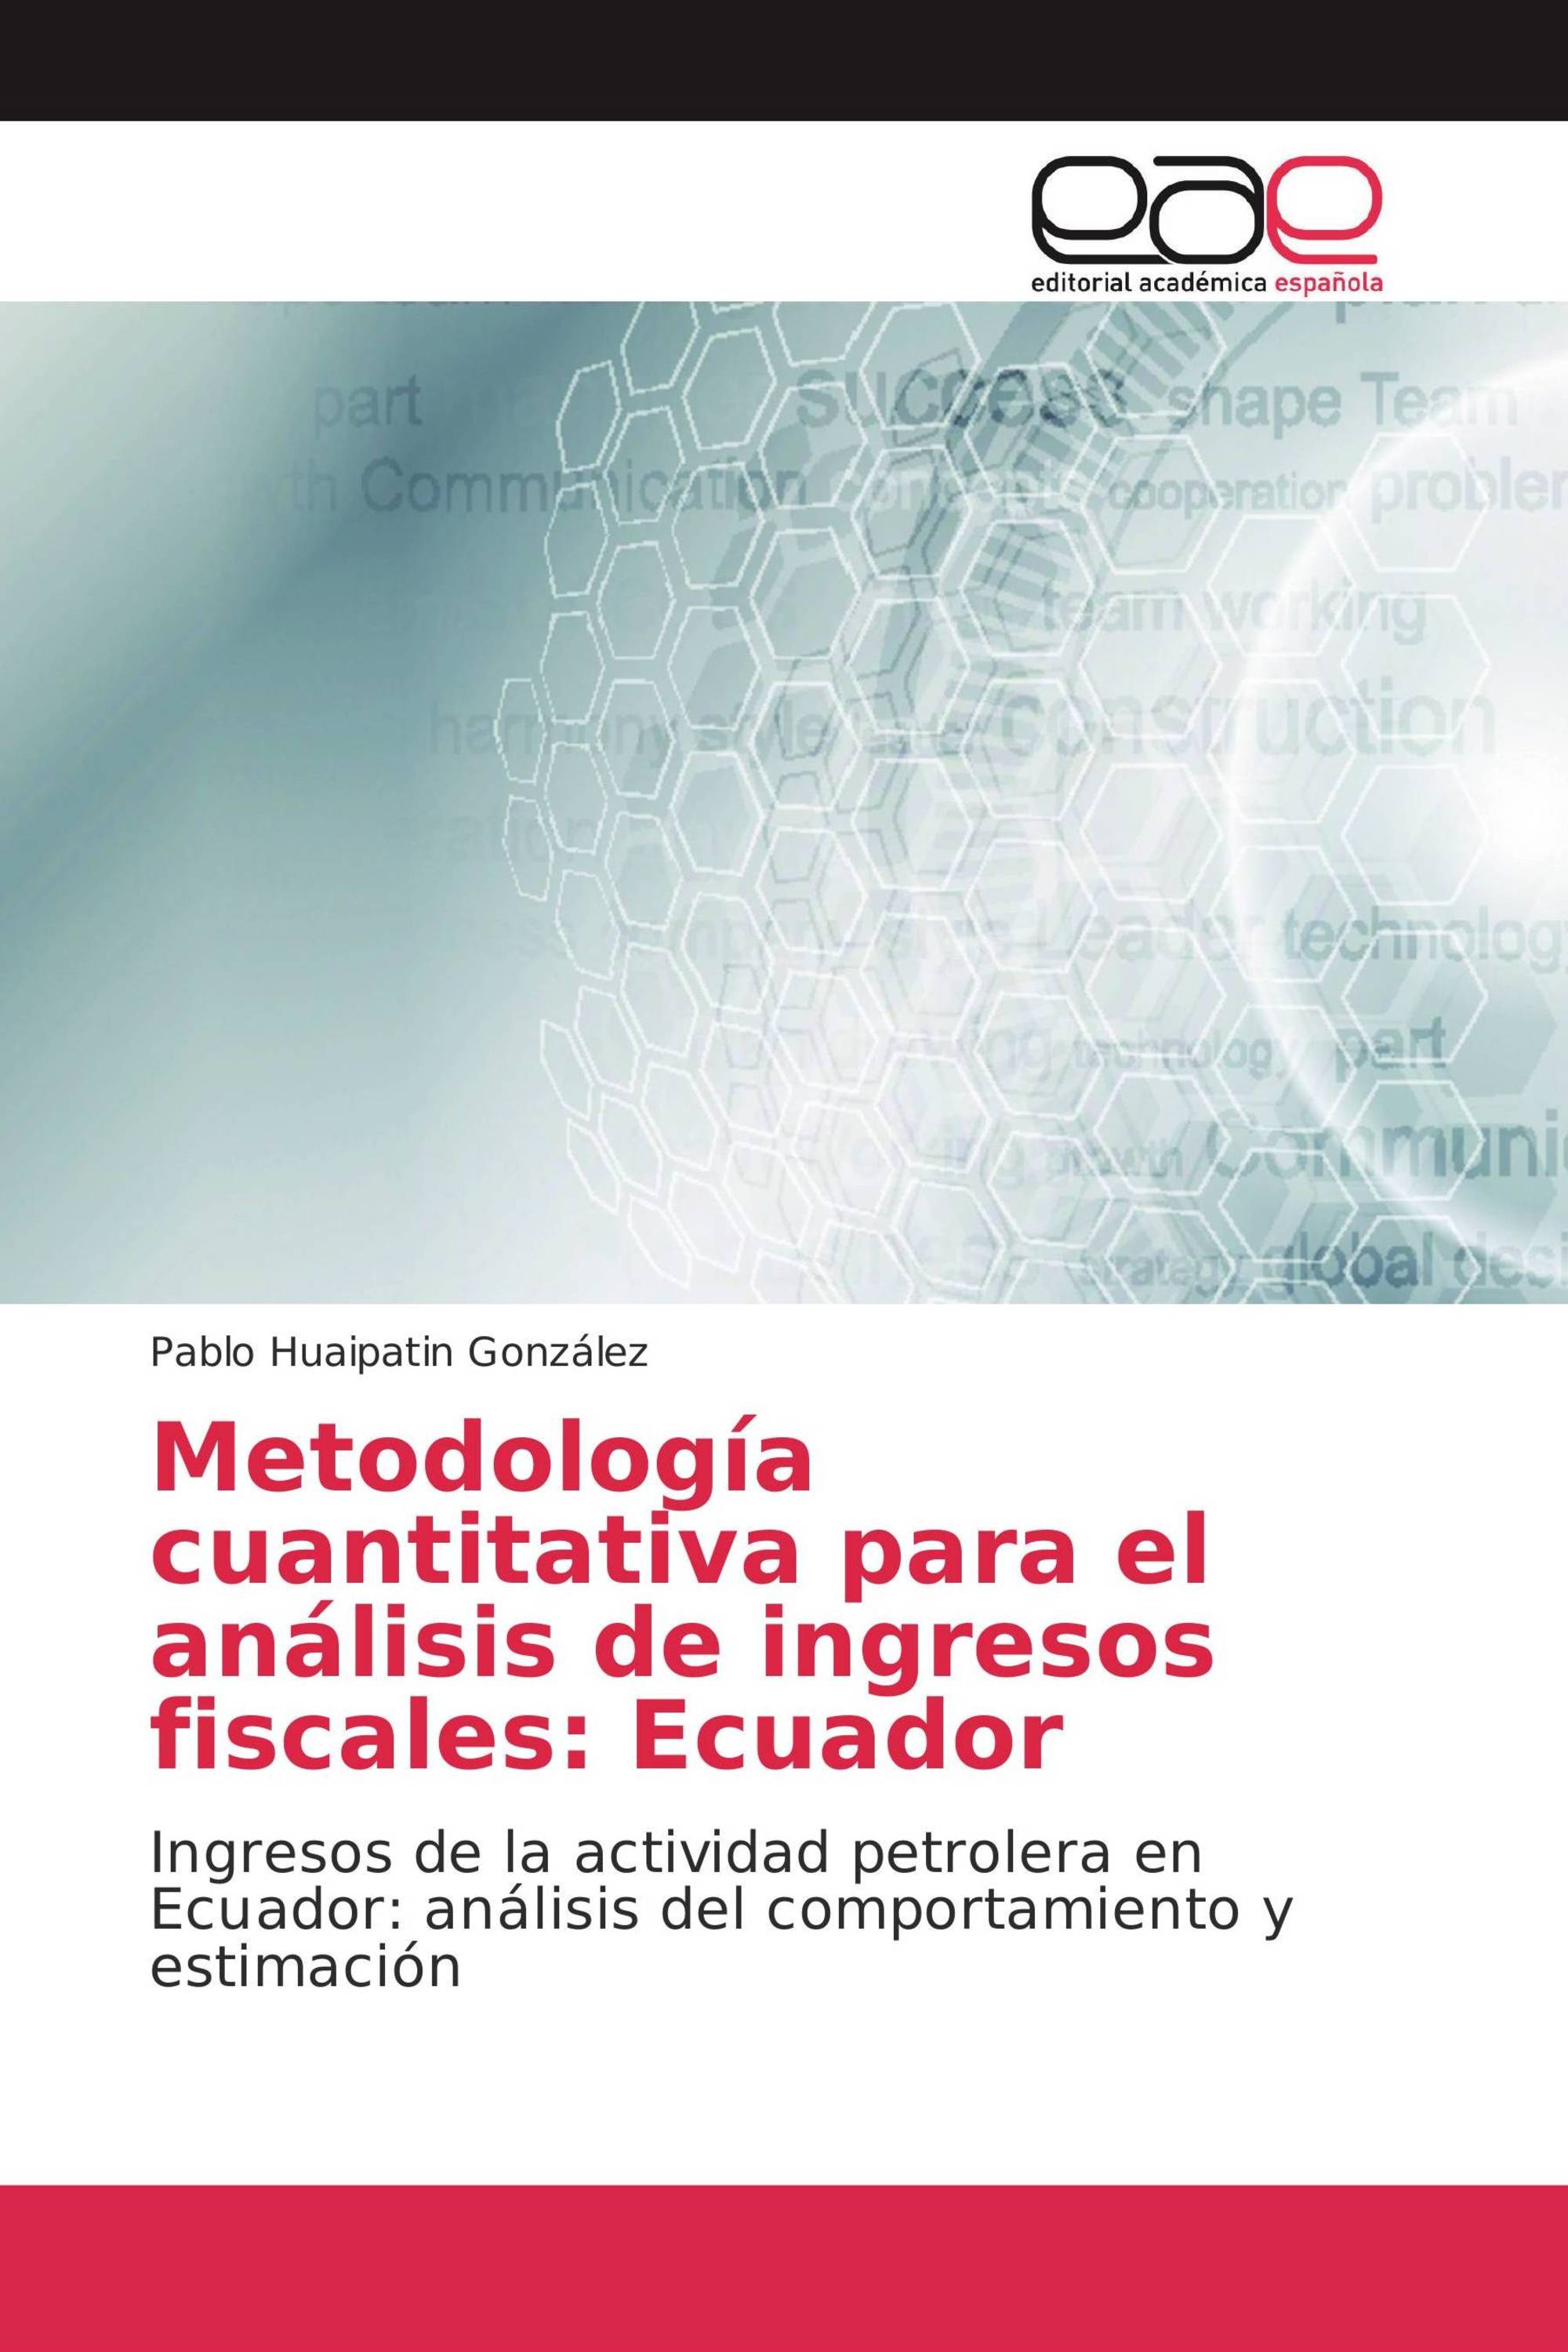 Metodología cuantitativa para el análisis de ingresos fiscales: Ecuador